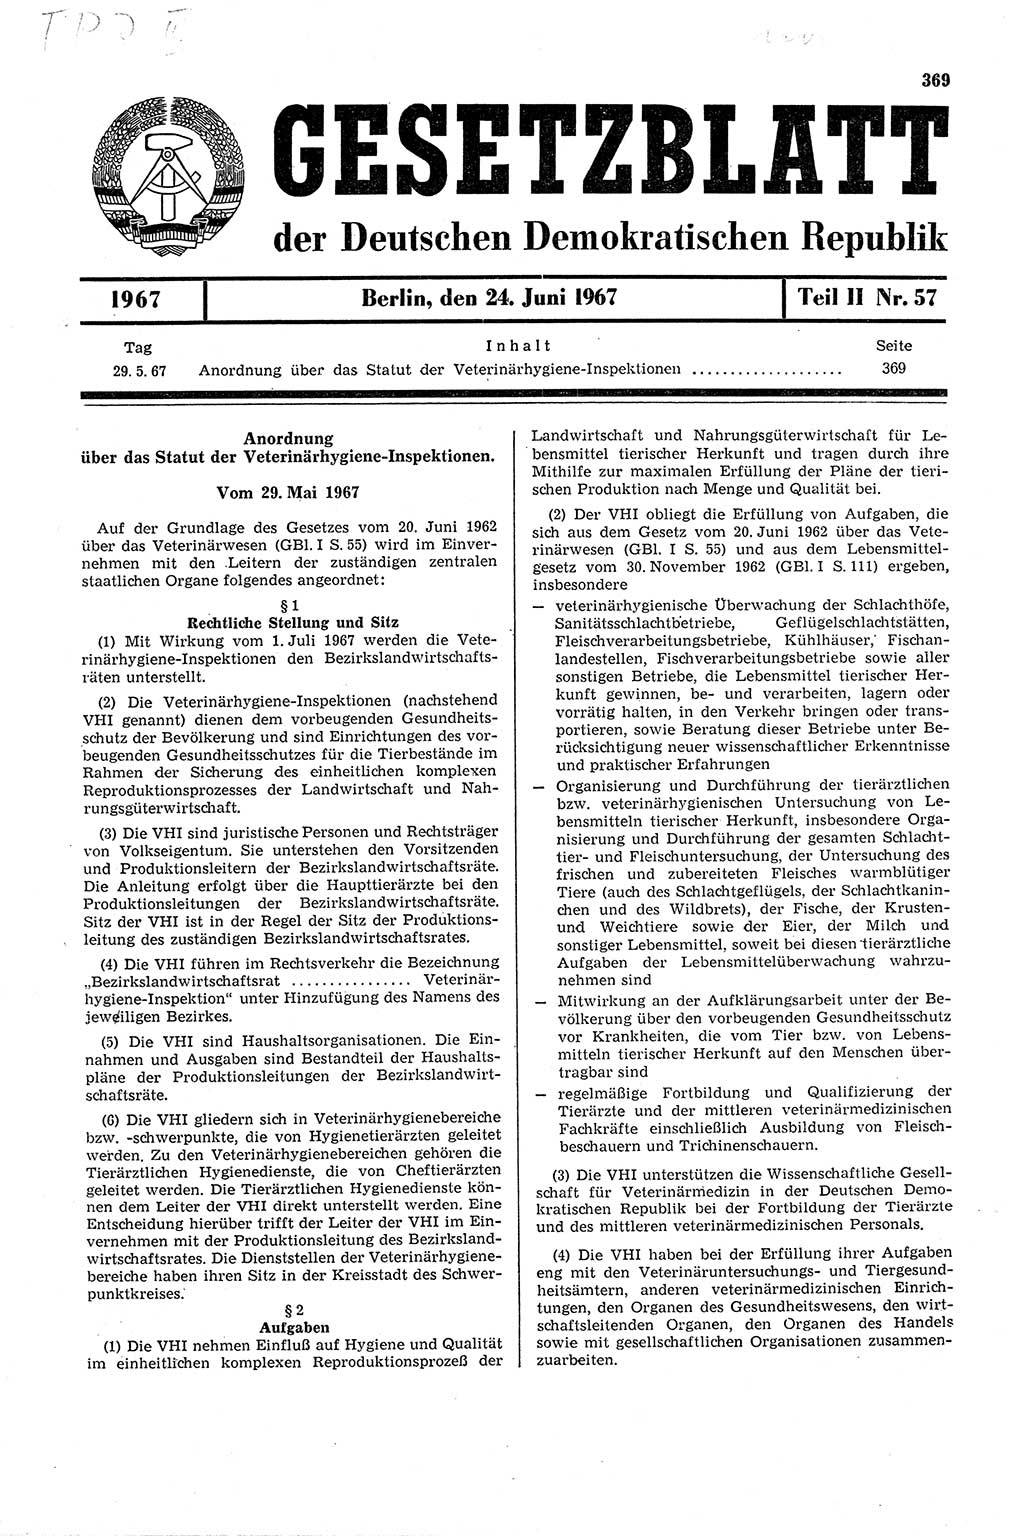 Gesetzblatt (GBl.) der Deutschen Demokratischen Republik (DDR) Teil ⅠⅠ 1967, Seite 369 (GBl. DDR ⅠⅠ 1967, S. 369)